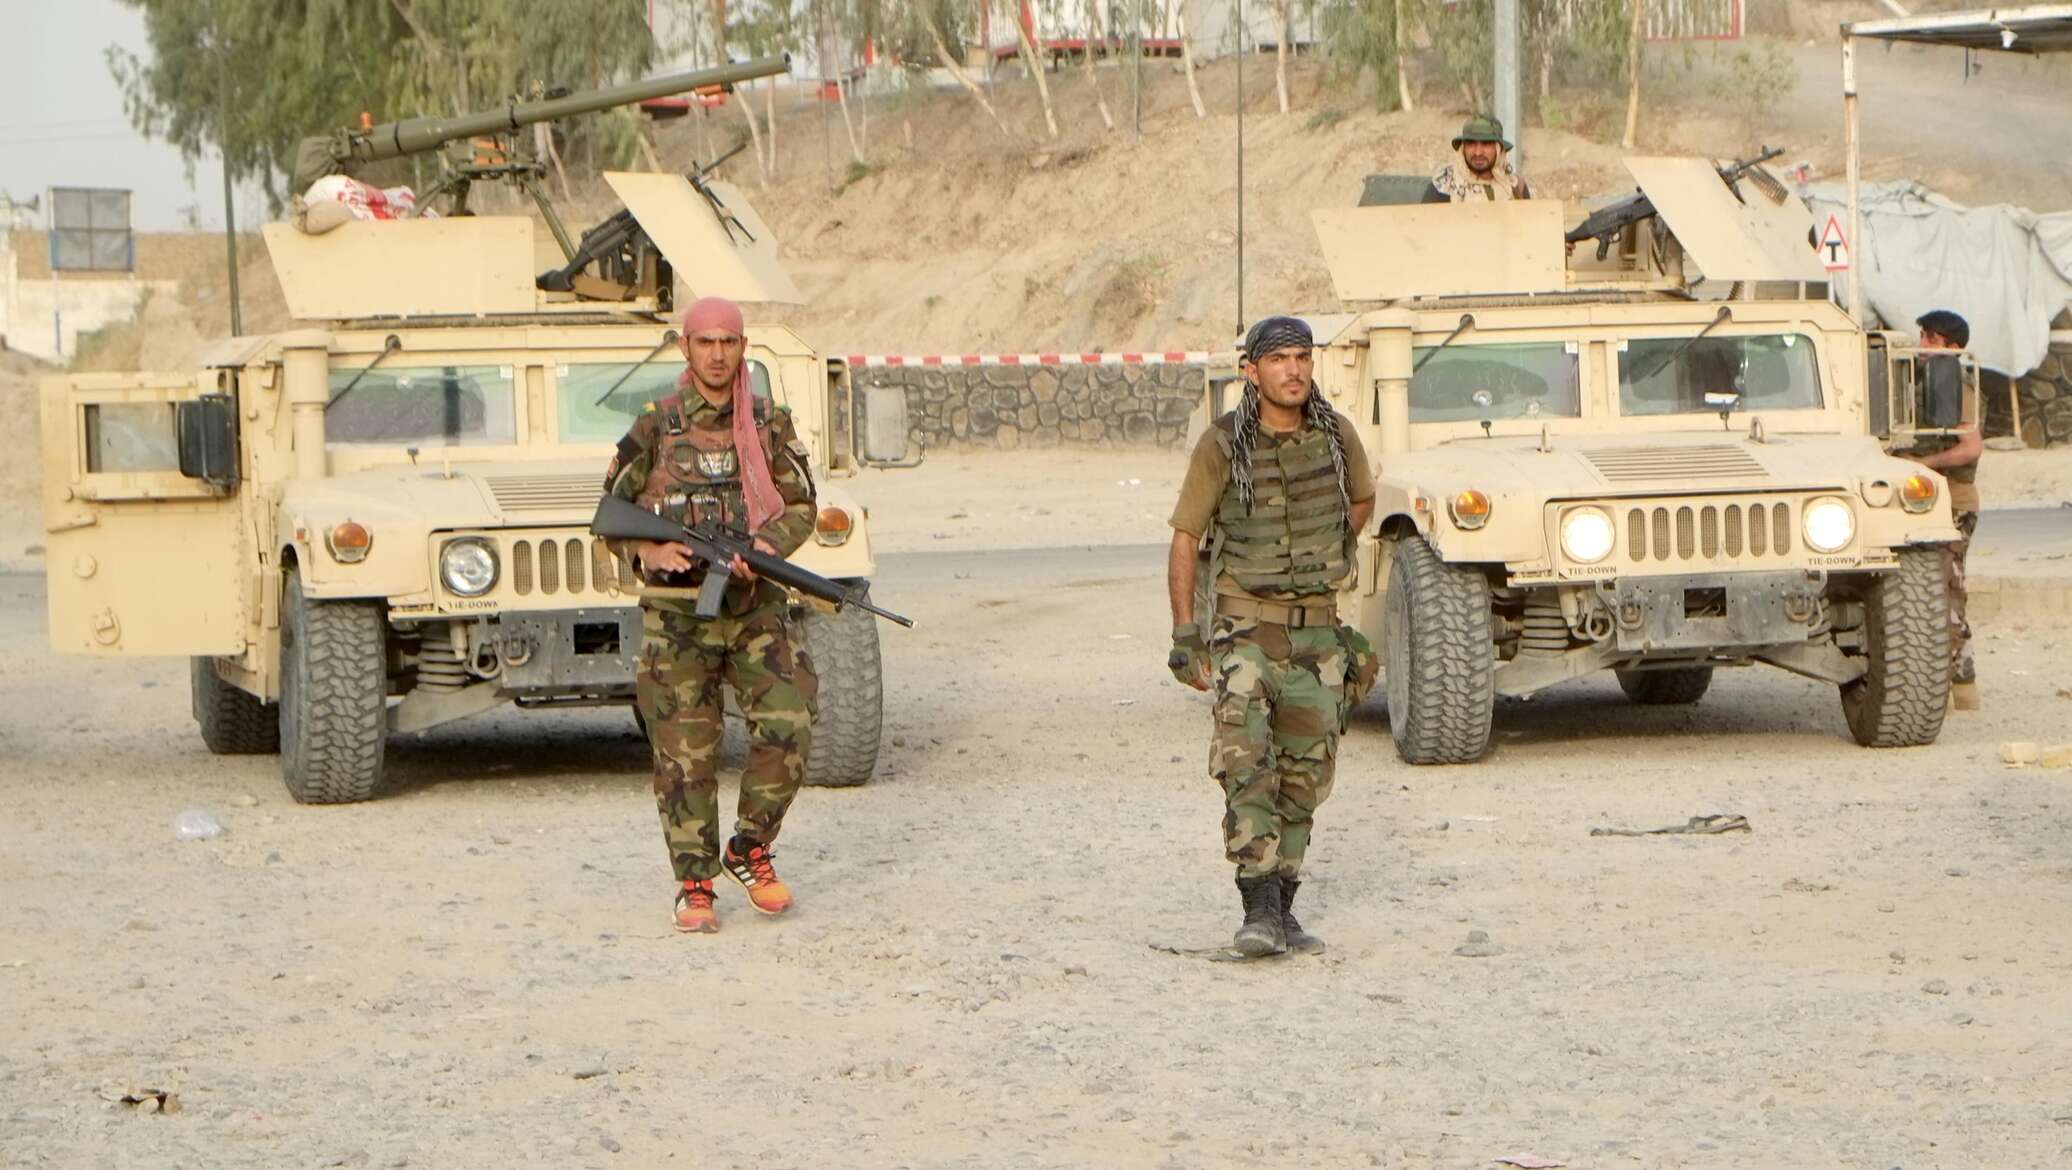 Летчик таджик. Армия Афганистана 2021. Армия США В Афганистане 2021 талибы. Армия США В Афганистане 2021. Наступление «Талибана» (2021).